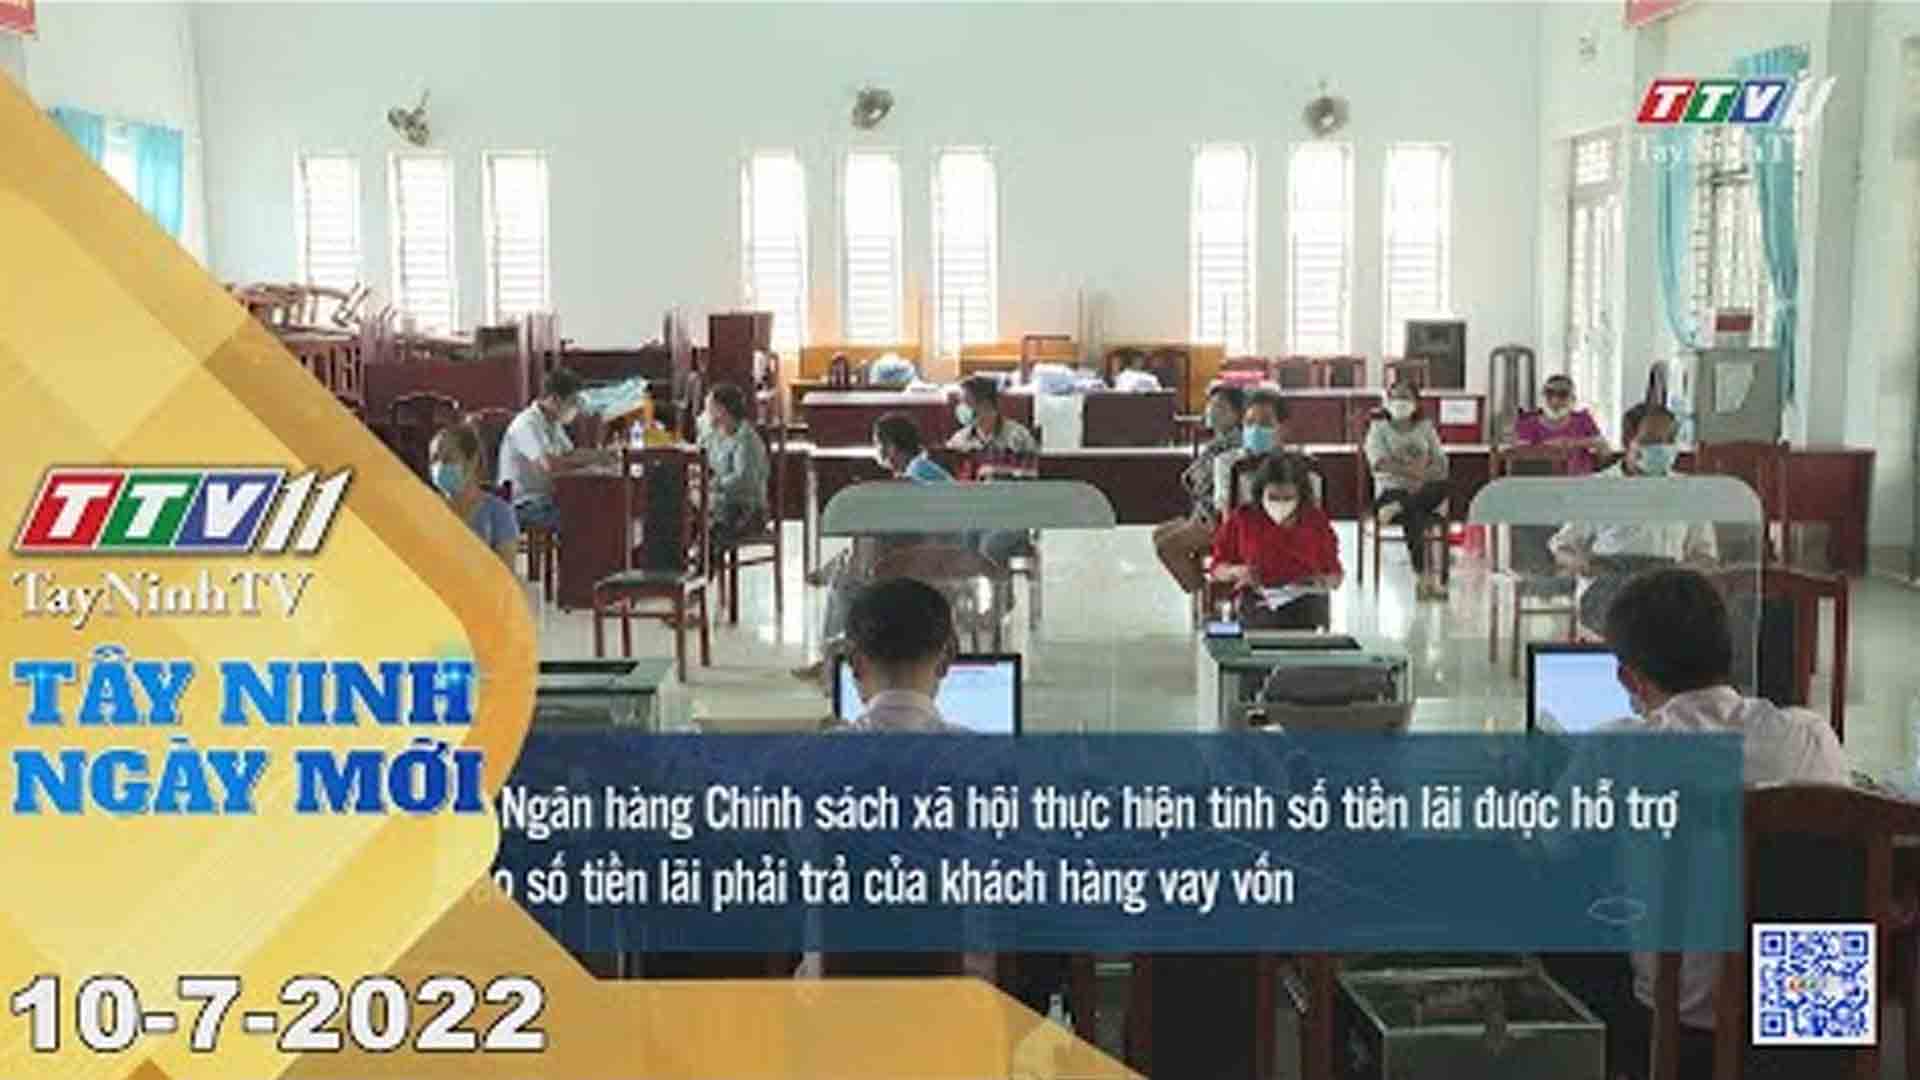 Tây Ninh ngày mới 10-7-2022 | Tin tức hôm nay | TayNinhTV